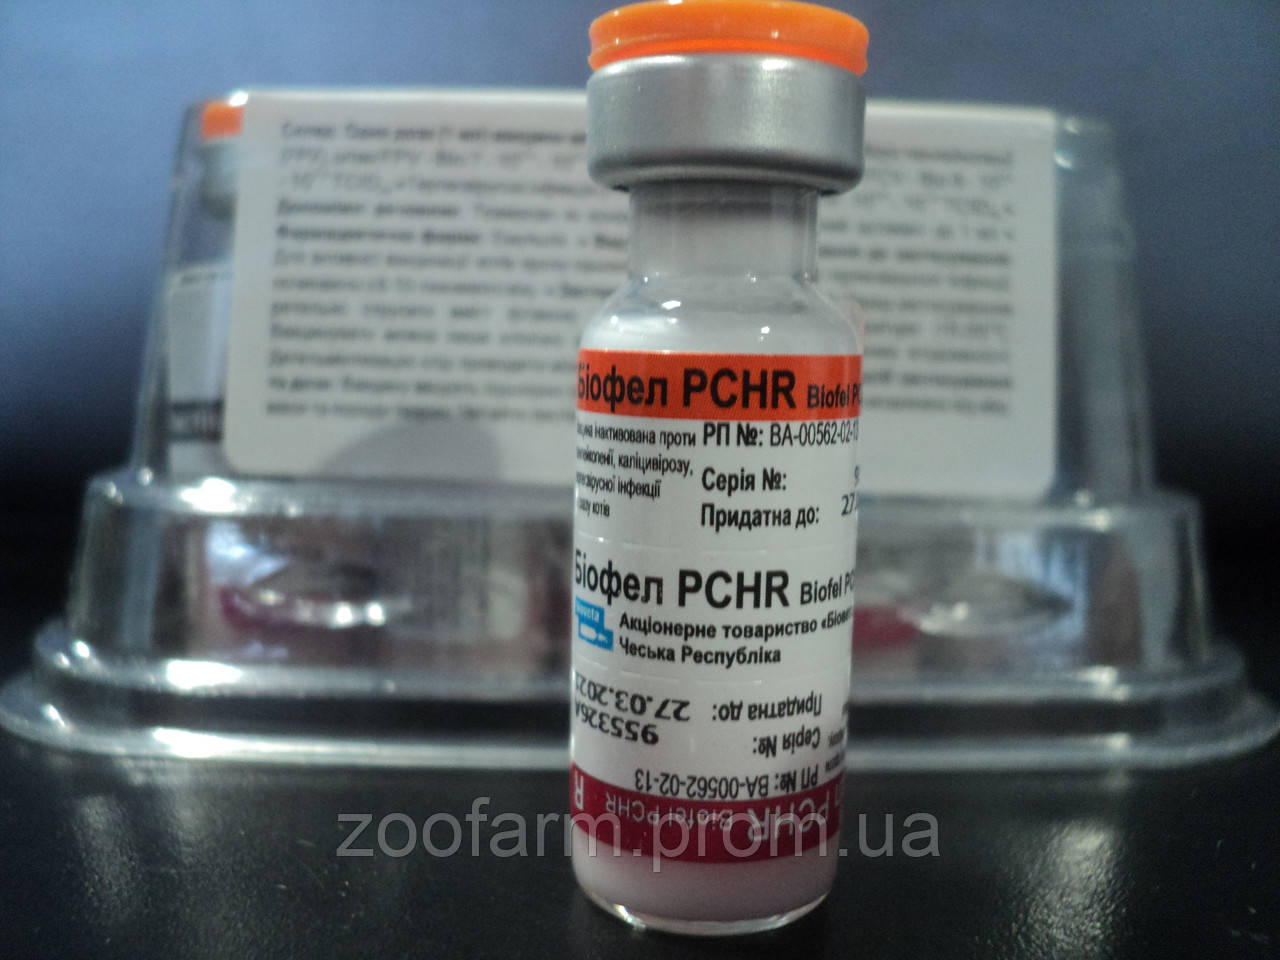 Вакцина pchr для кошек. Вакцина Биофел PCHR. Биофел с бешенством вакцина для кошек. Биофел вакцина для кошек. Биофел PCHR для кошек.